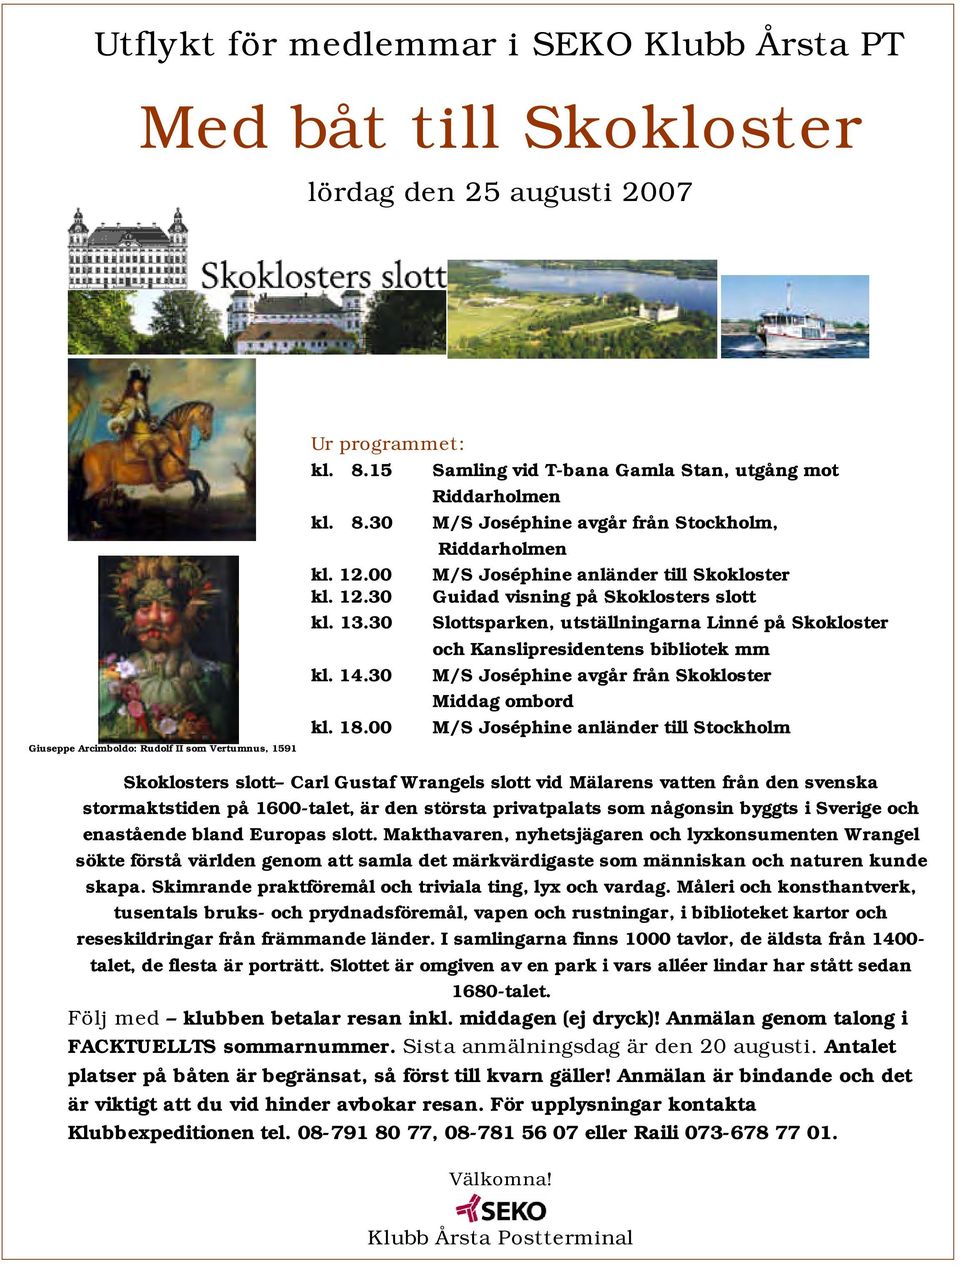 13.30 Slottsparken, utställningarna Linné på Skokloster och Kanslipresidentens bibliotek mm kl. 14.30 M/S Joséphine avgår från Skokloster Middag ombord kl. 18.